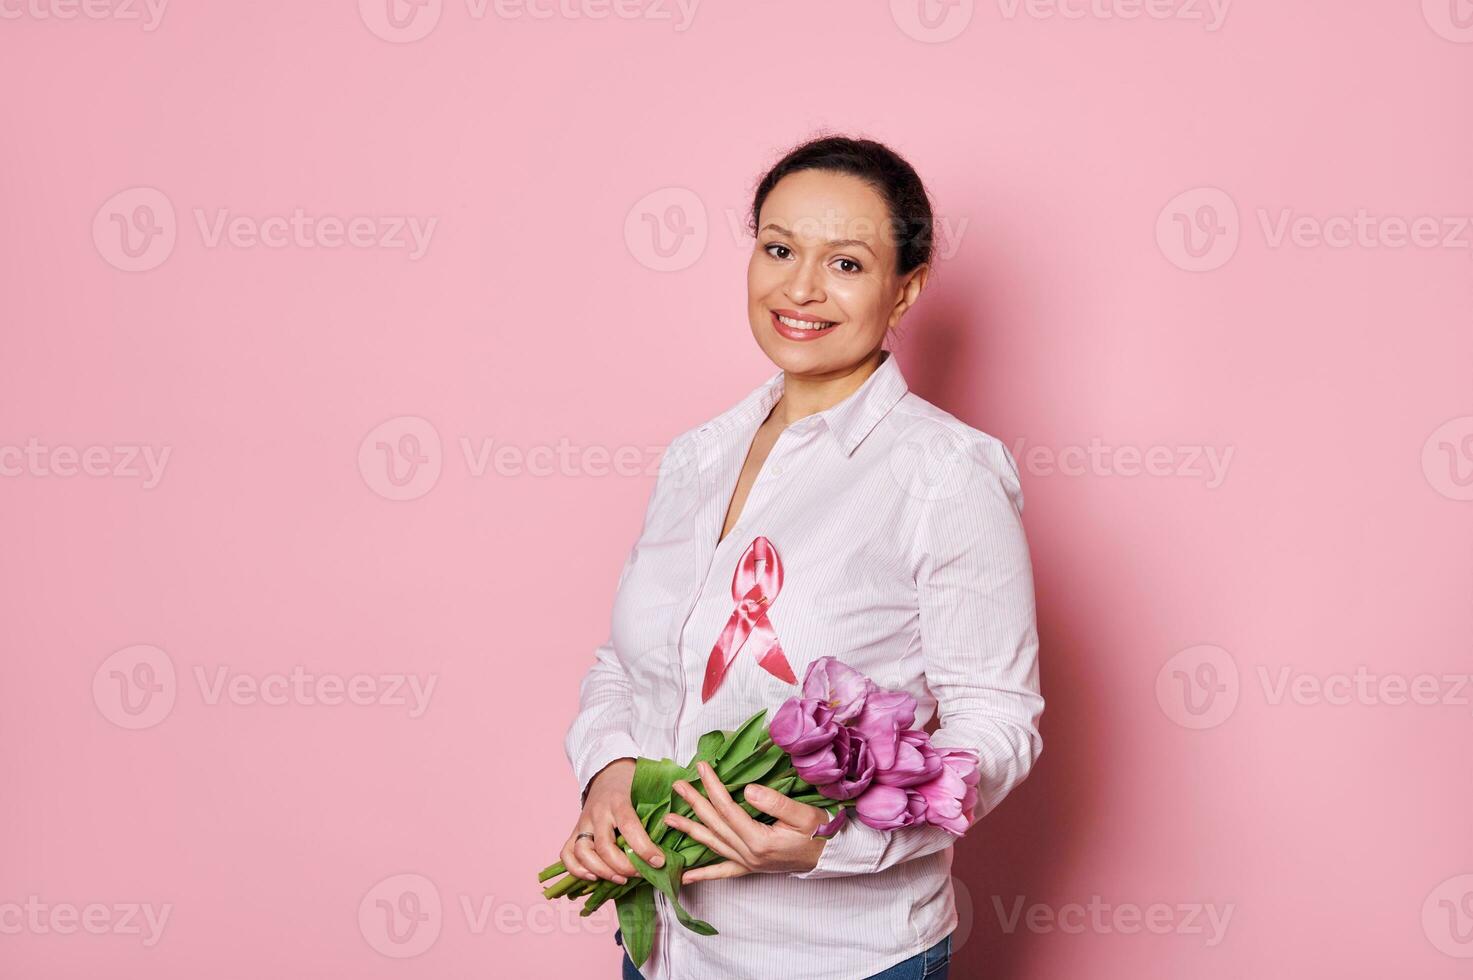 trevlig kvinna med bukett av tulpaner, bär rosa satin medvetenhet band, som visar Stöd för bröst cancer överlevande foto